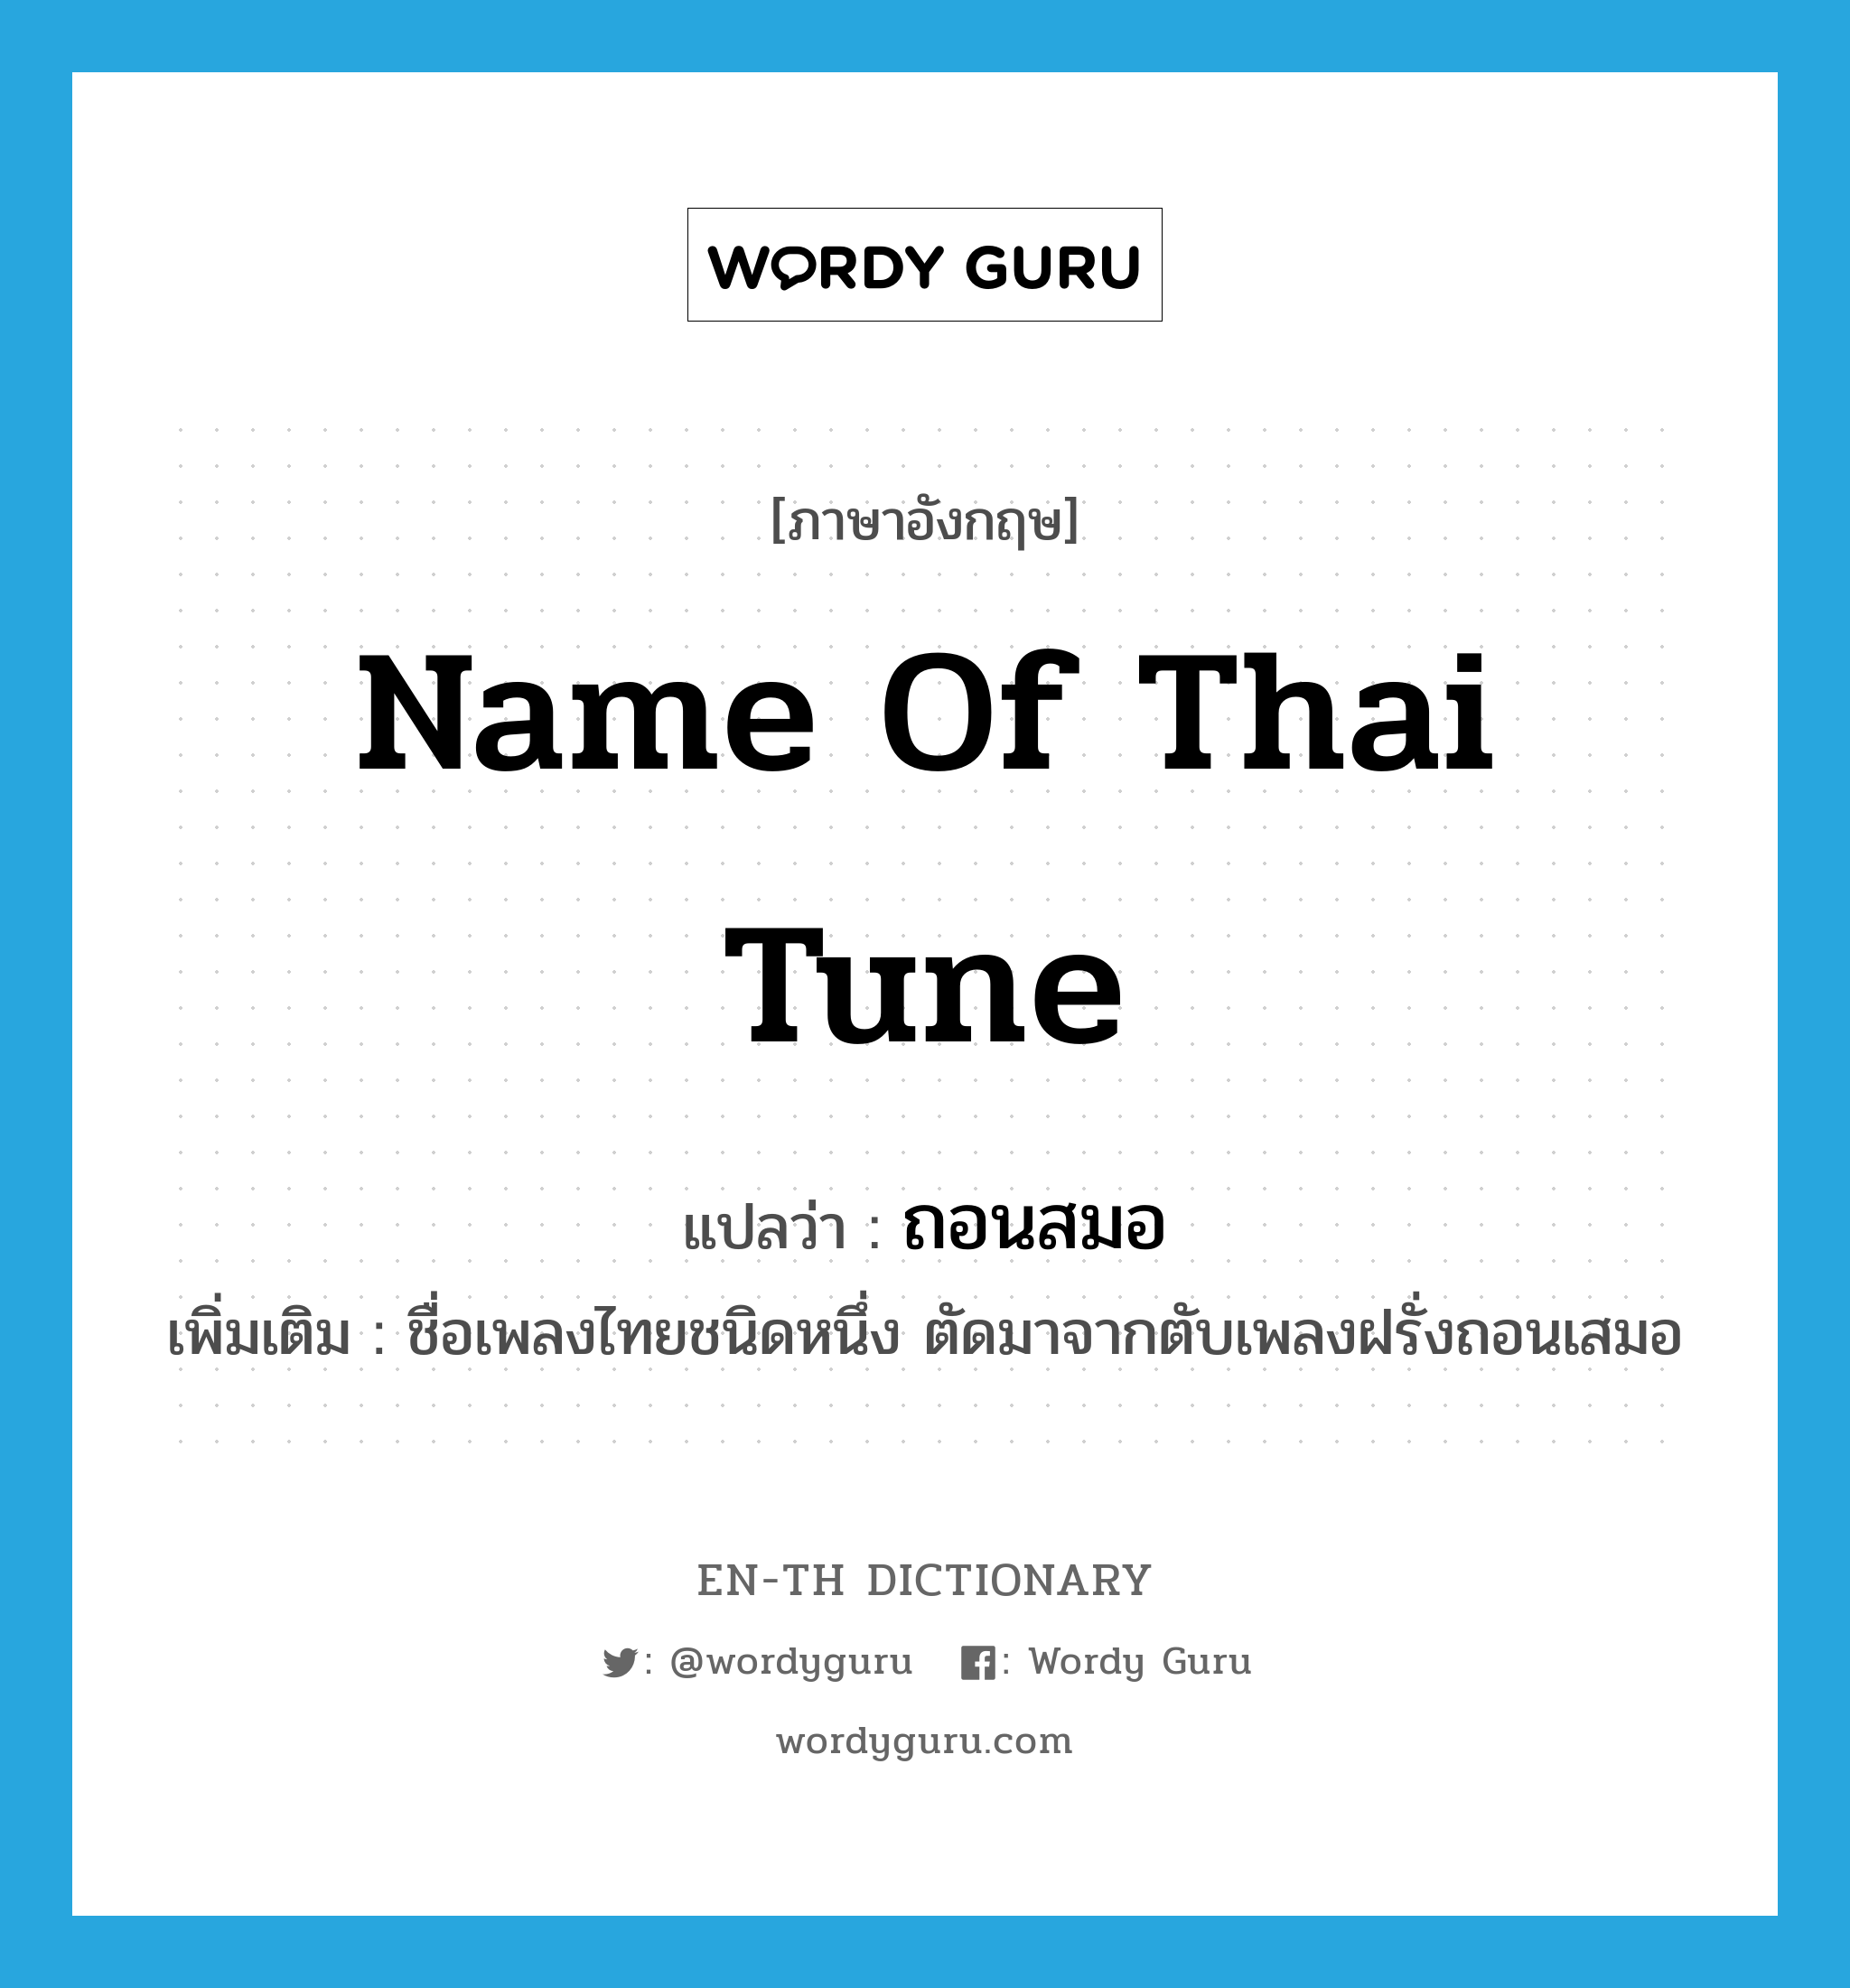 name of Thai tune แปลว่า?, คำศัพท์ภาษาอังกฤษ name of Thai tune แปลว่า ถอนสมอ ประเภท N เพิ่มเติม ชื่อเพลงไทยชนิดหนึ่ง ตัดมาจากตับเพลงฝรั่งถอนเสมอ หมวด N